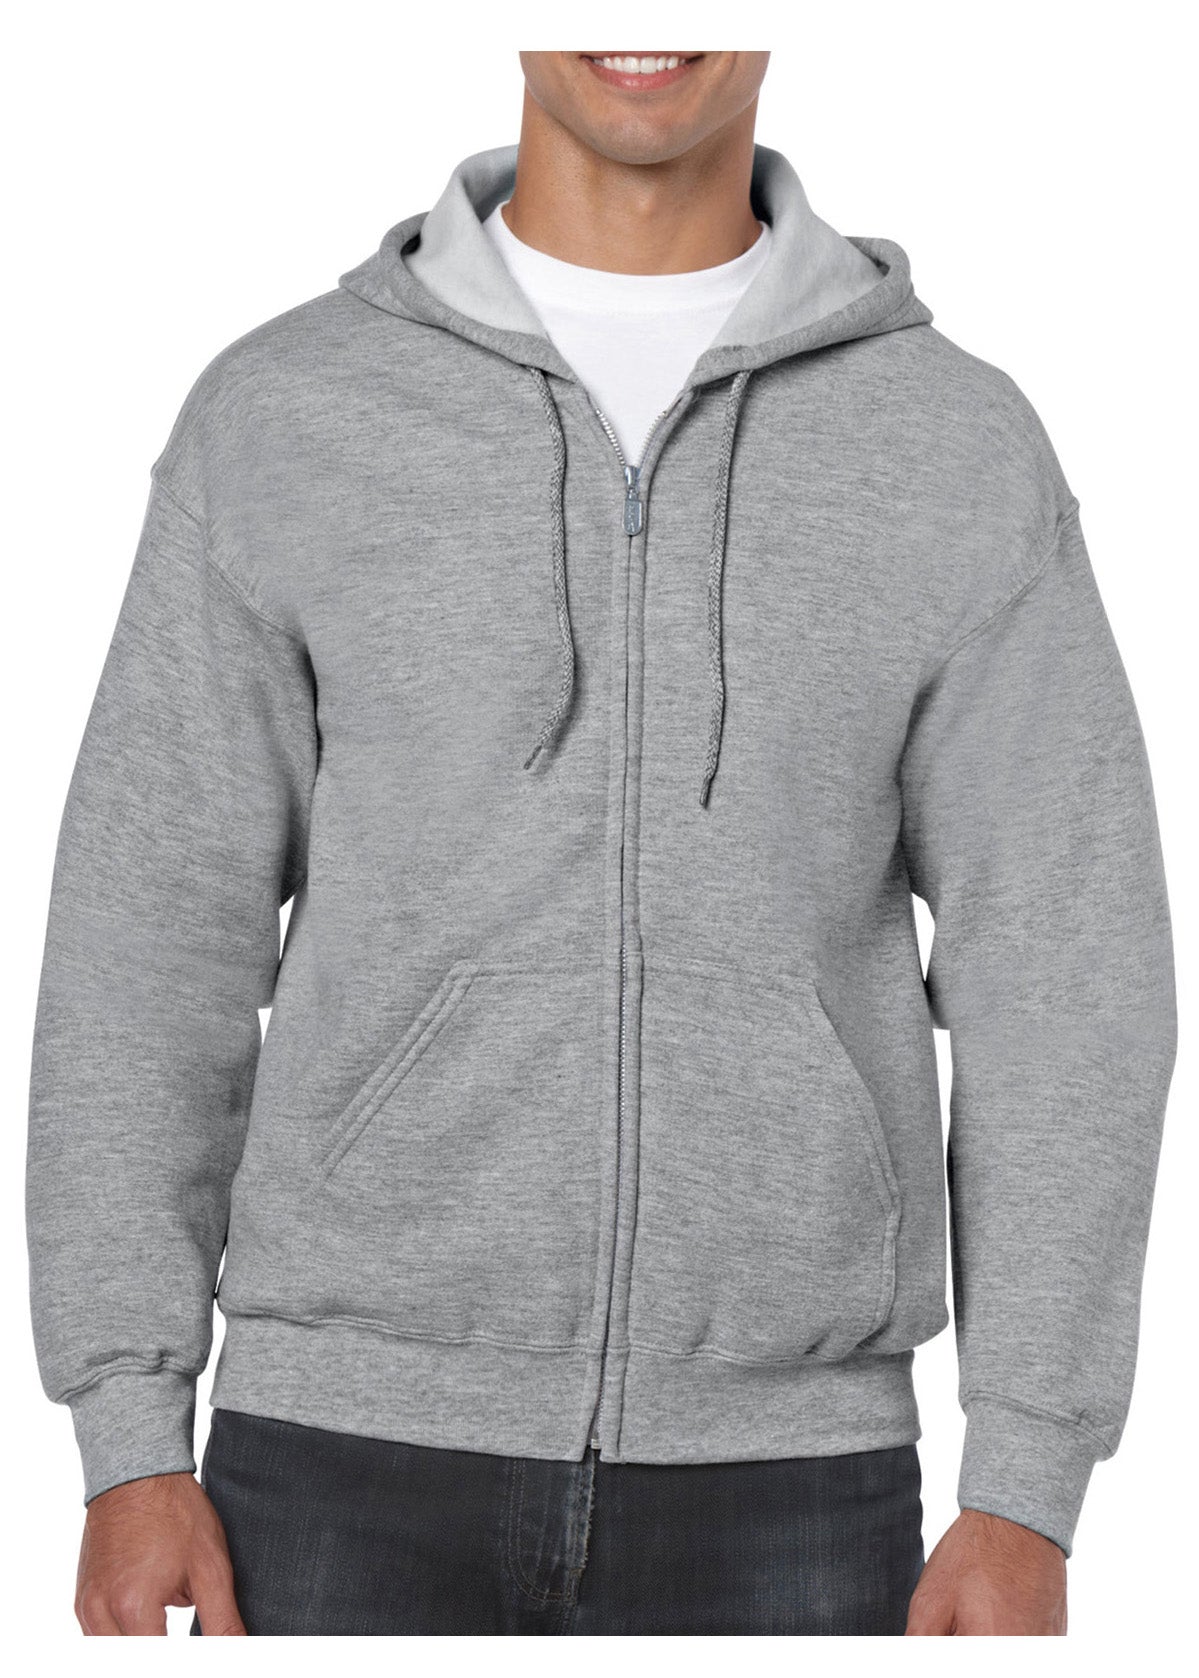 Gildan Unisex Heavy Blend Adult Full Zip Sweatshirt